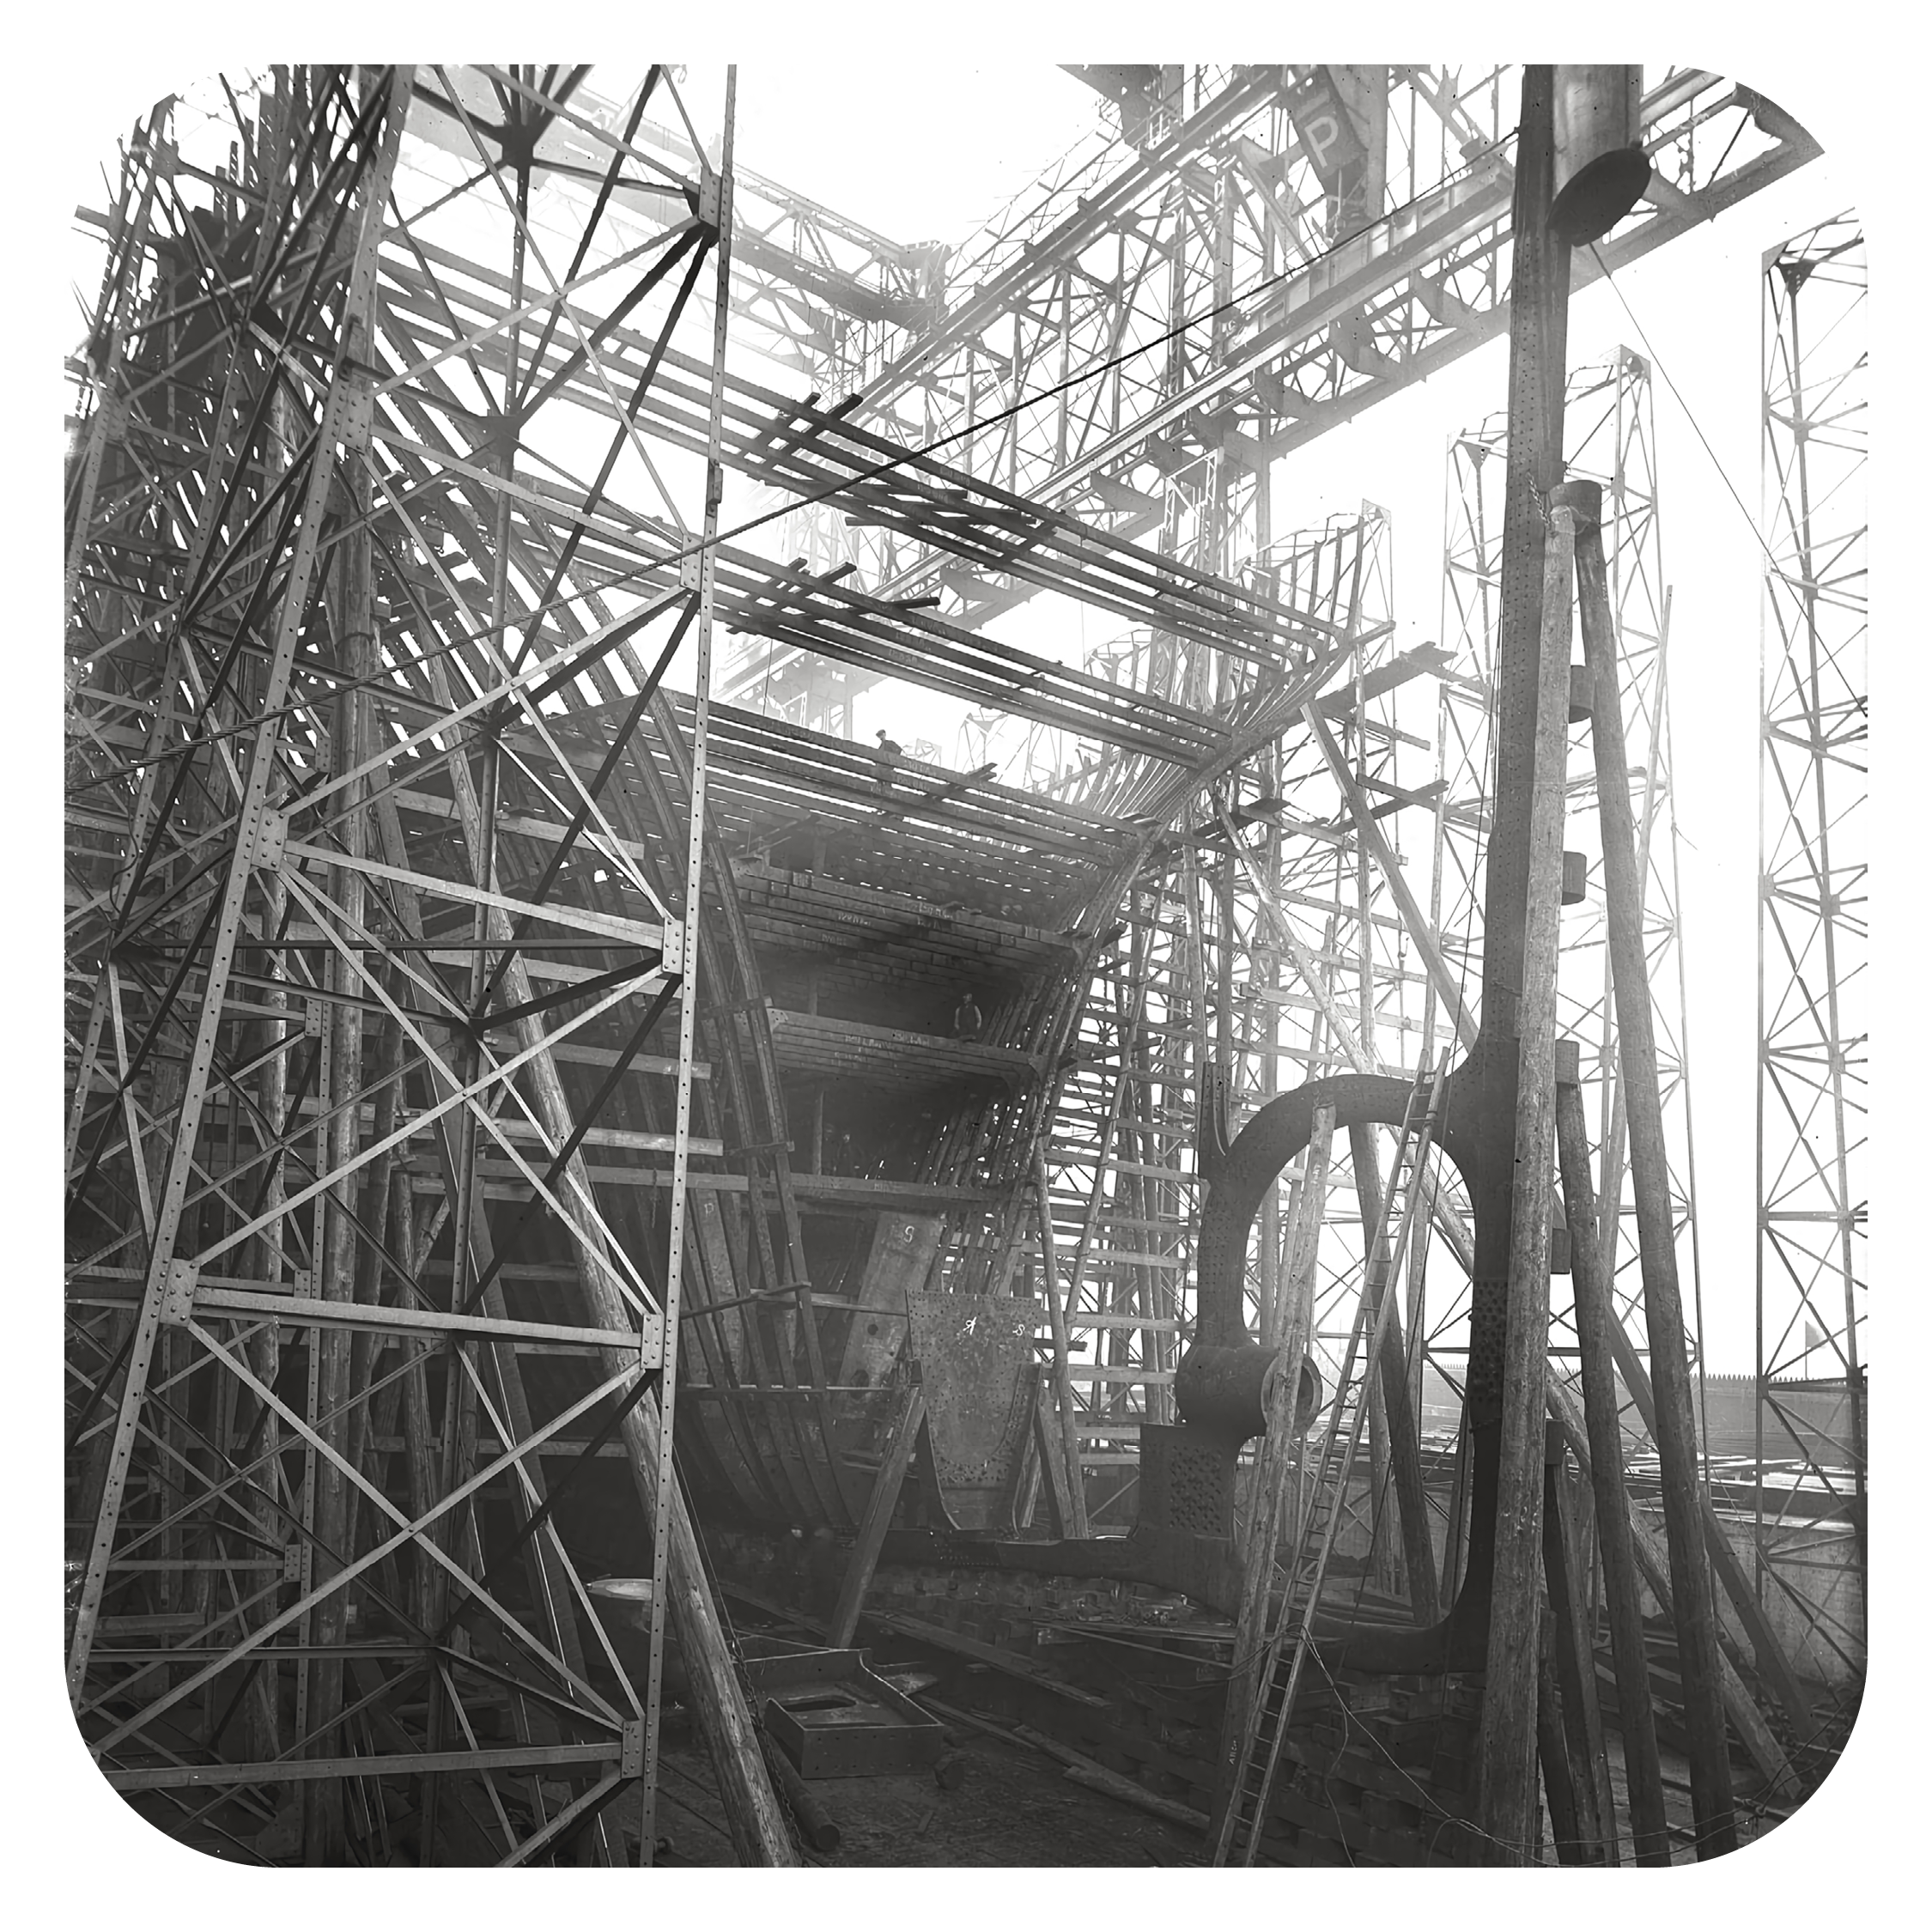 Construction on Titanic begins in Belfast, Ireland, modern day Northern Ireland.